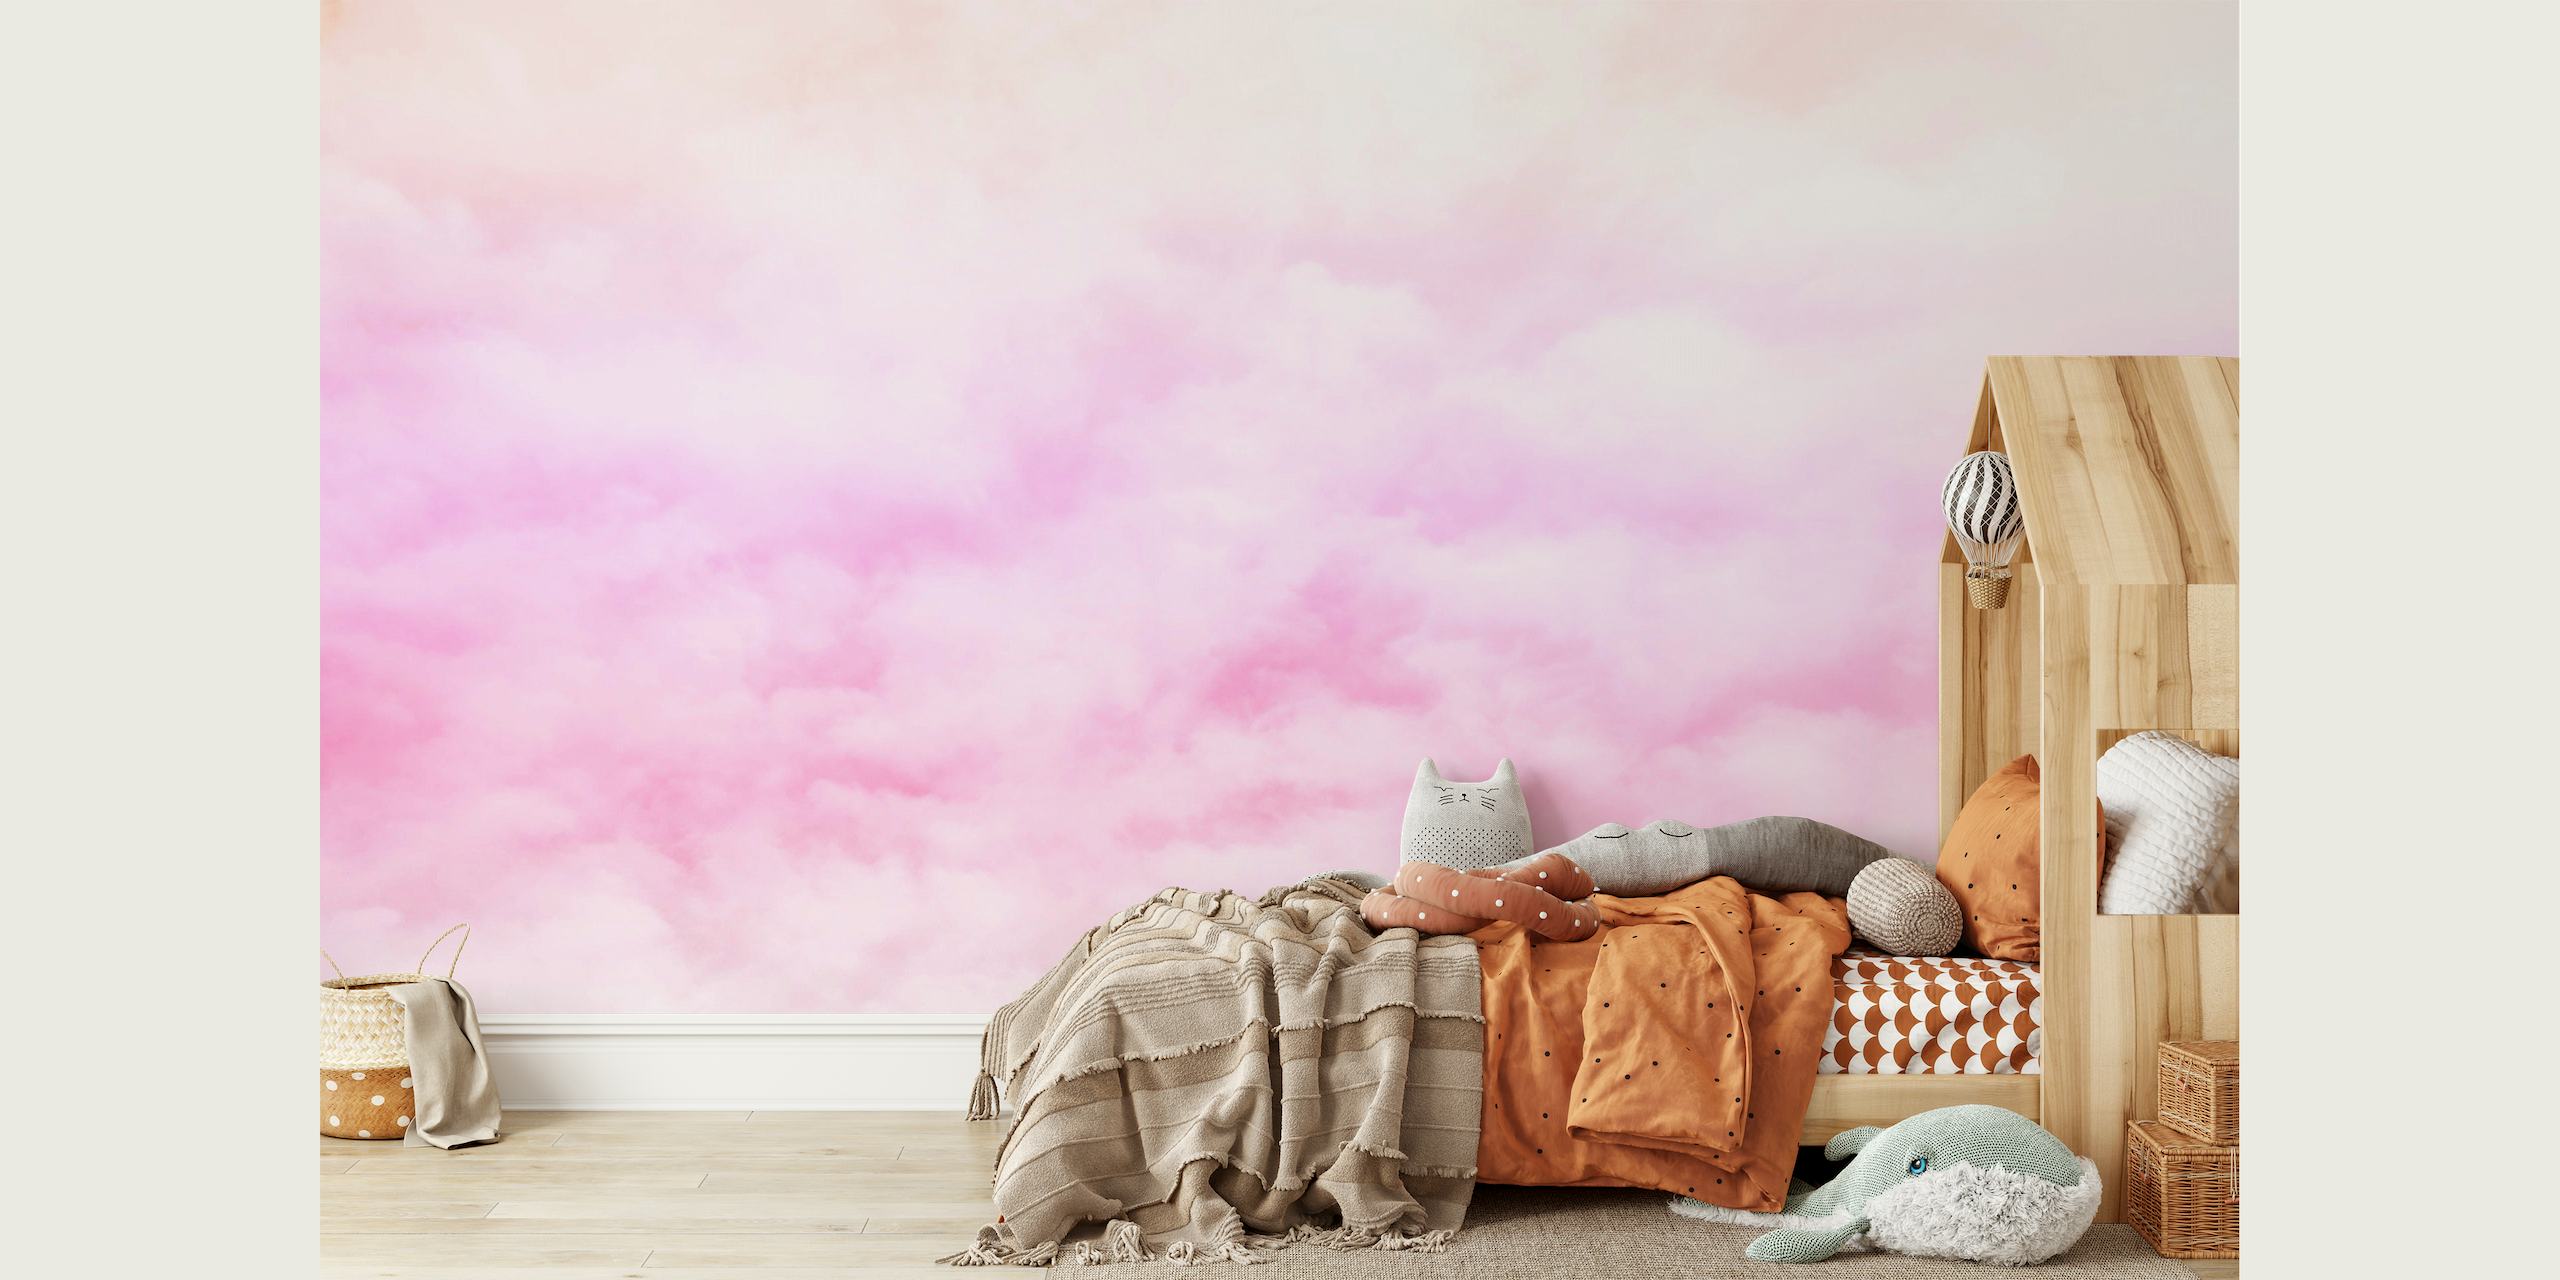 Subtelna, różowo-biała, pastelowa fototapeta z chmurami stanowi spokojną dekorację ścienną